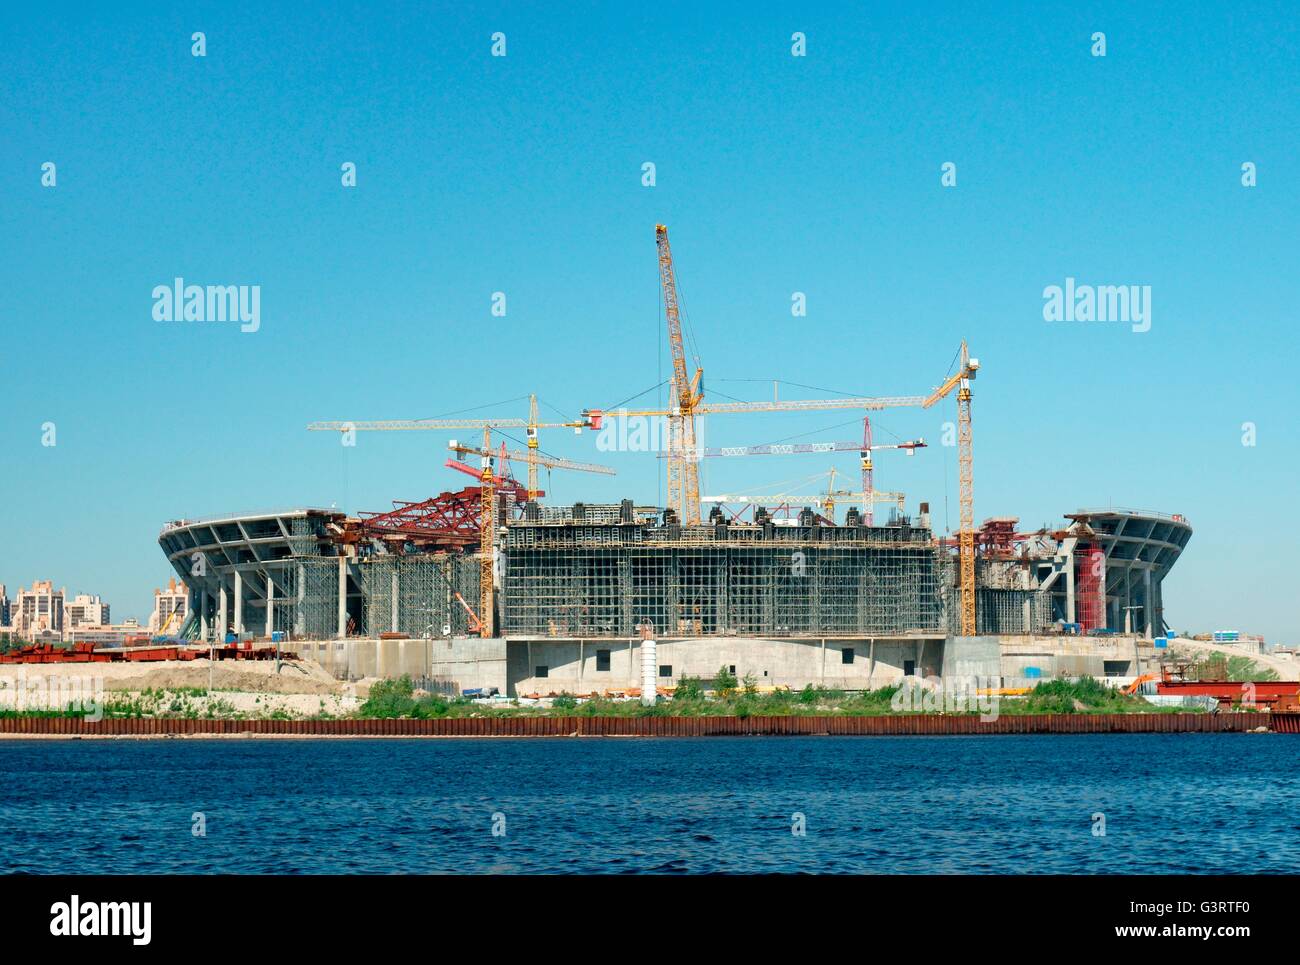 La Russie, st. petersburg. Le nouveau stade de football zenit en construction mai 2014 sur l'île krestovsky Banque D'Images